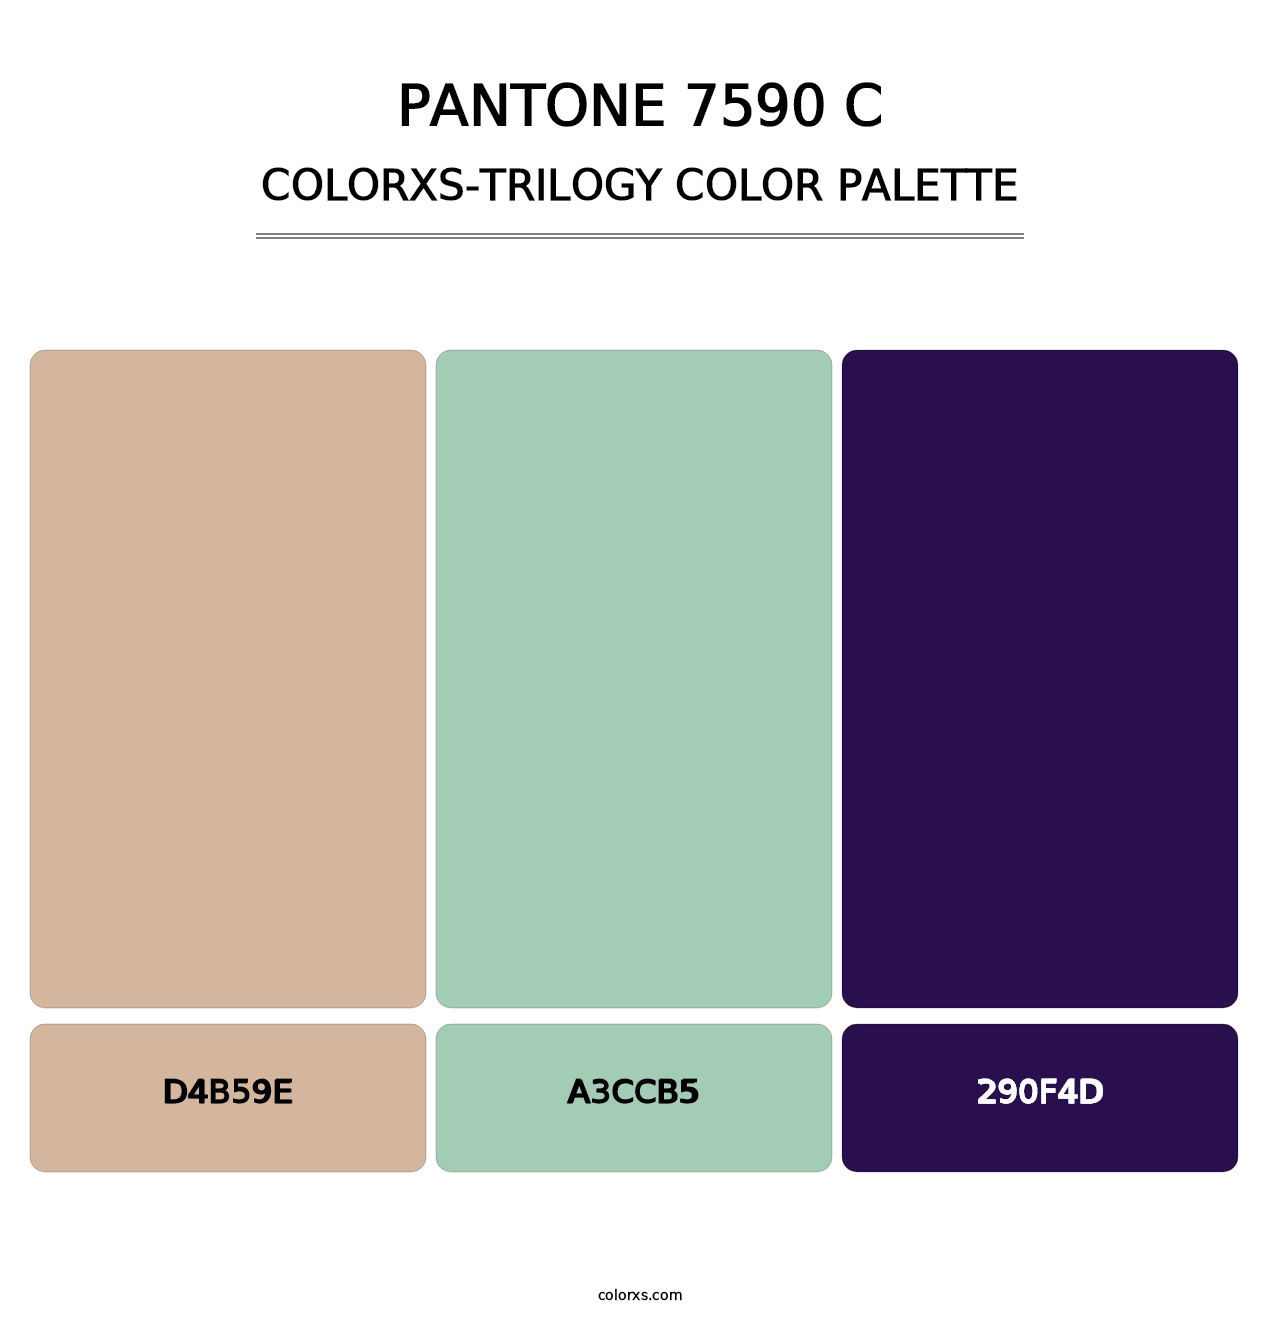 PANTONE 7590 C - Colorxs Trilogy Palette